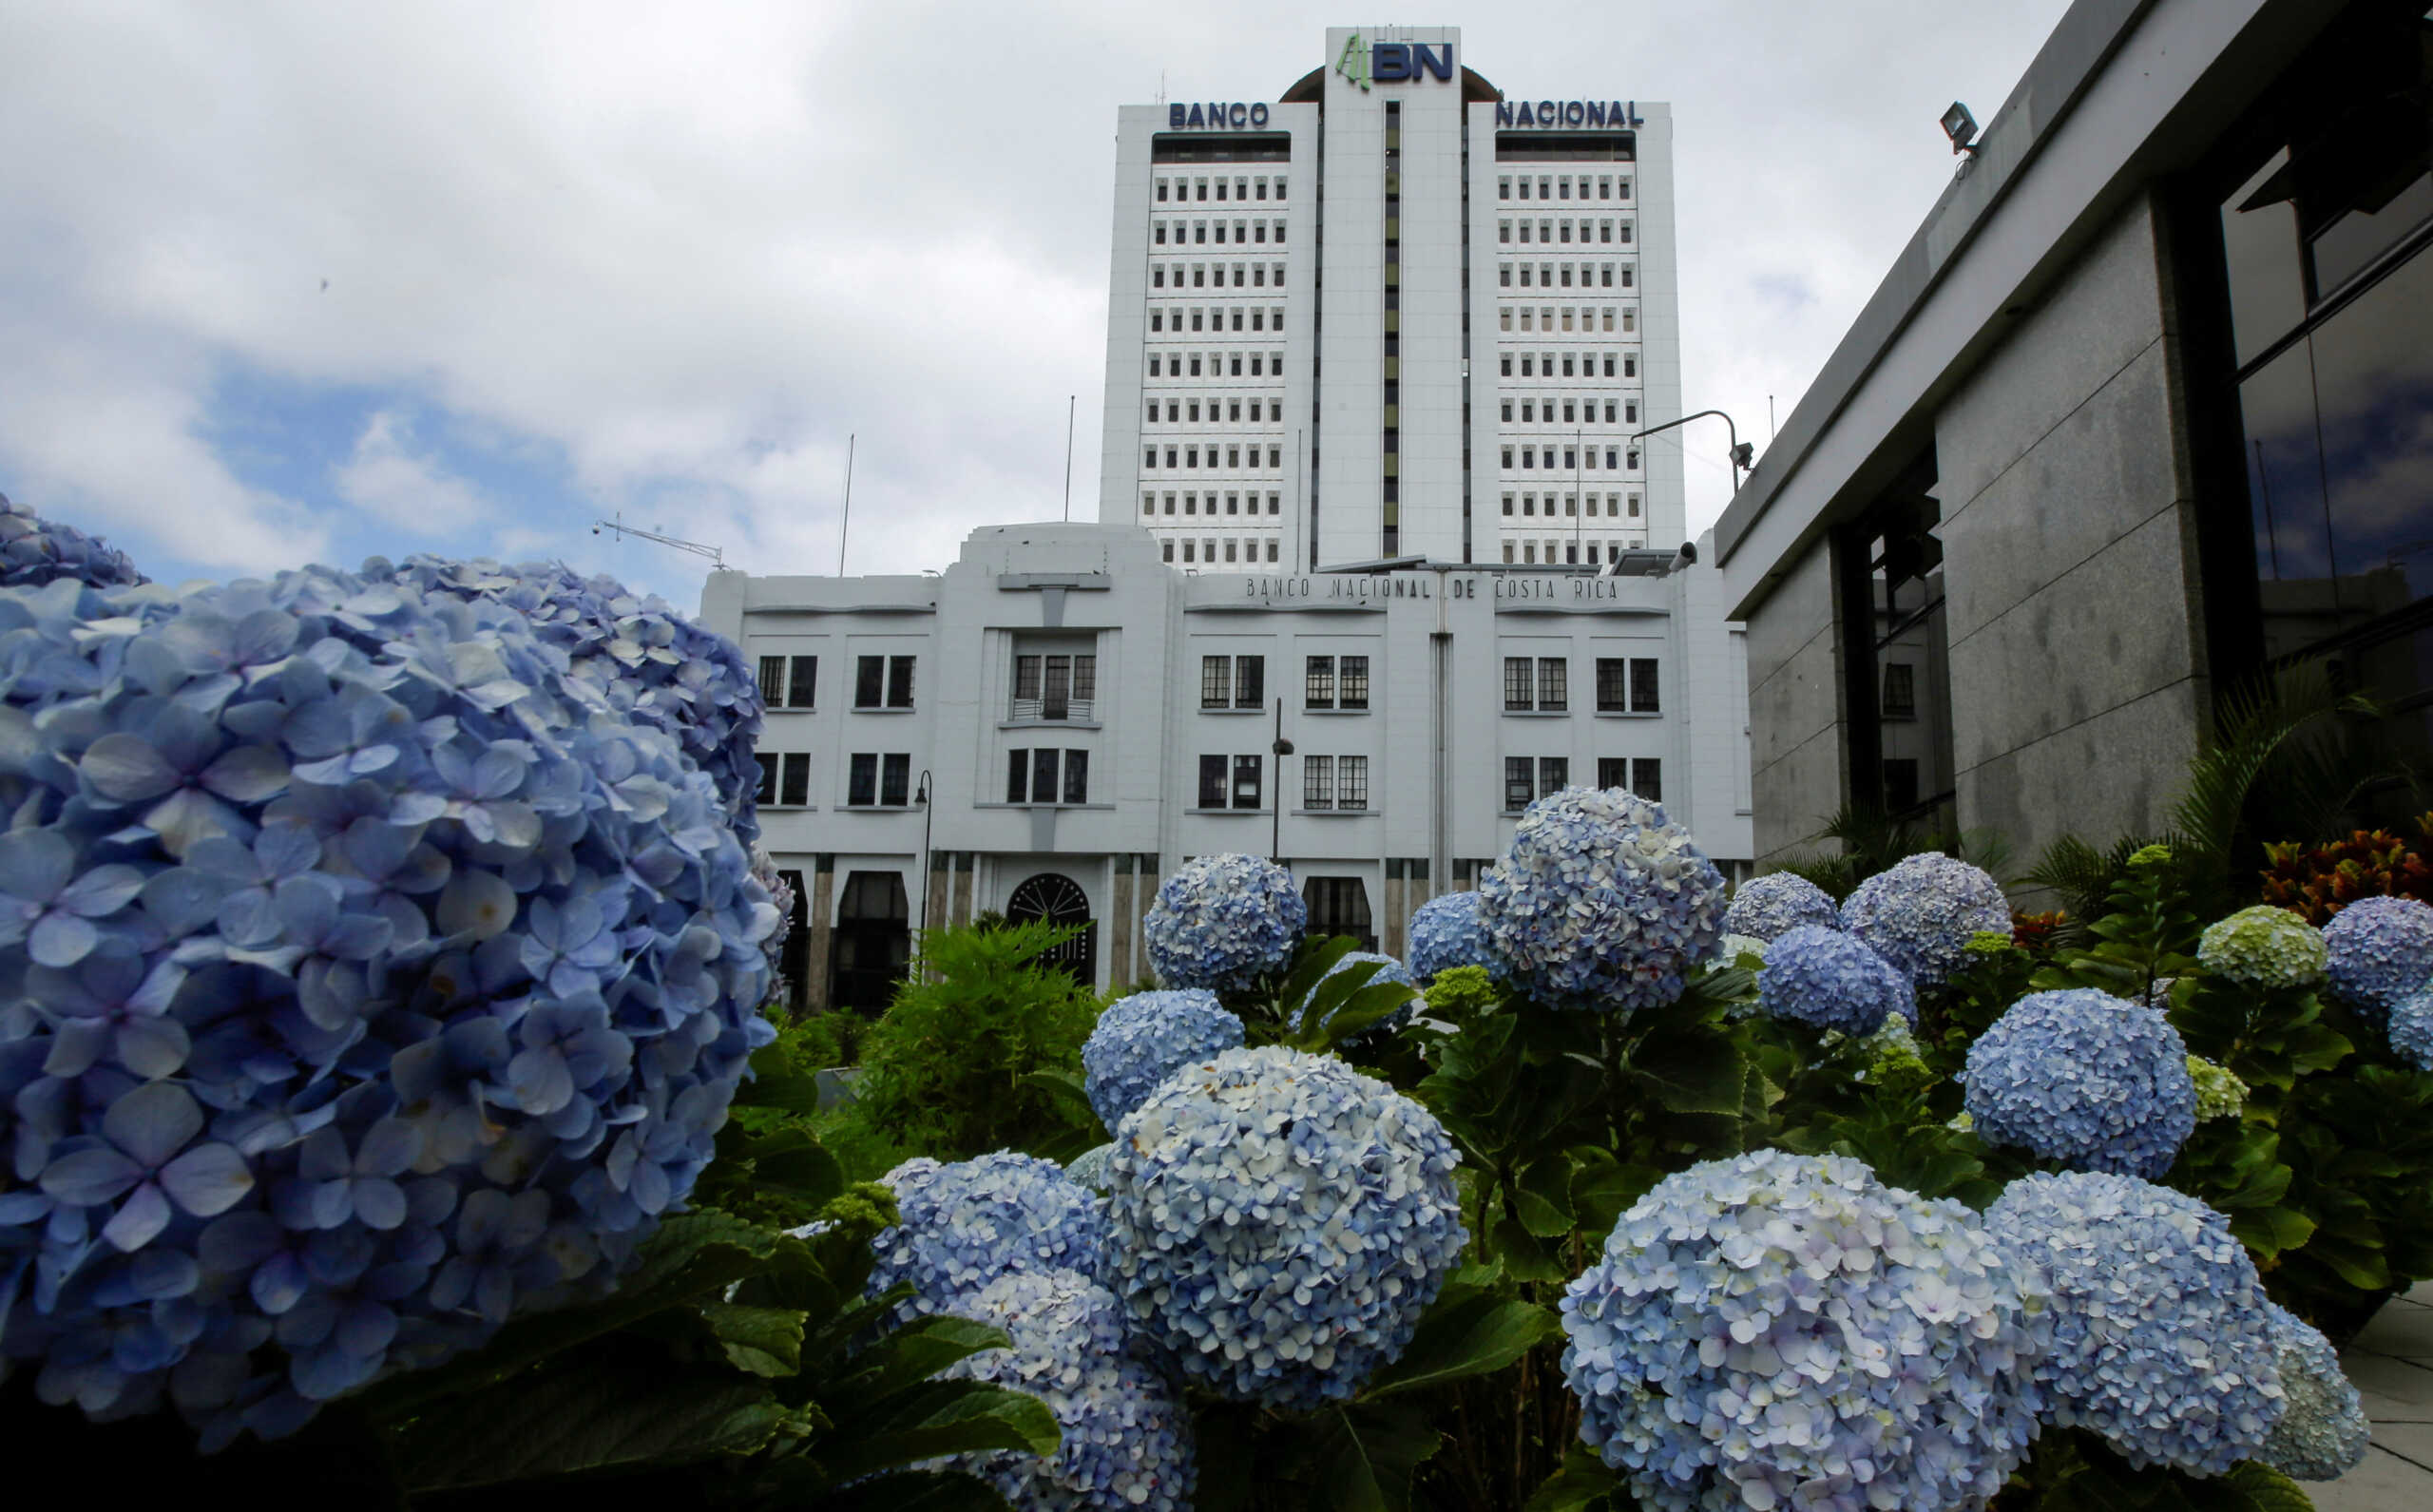 Κόστα Ρίκα: «Χάθηκαν» 3,3 δισ. colones από τα ταμεία της Εθνικής Τράπεζας της χώρας